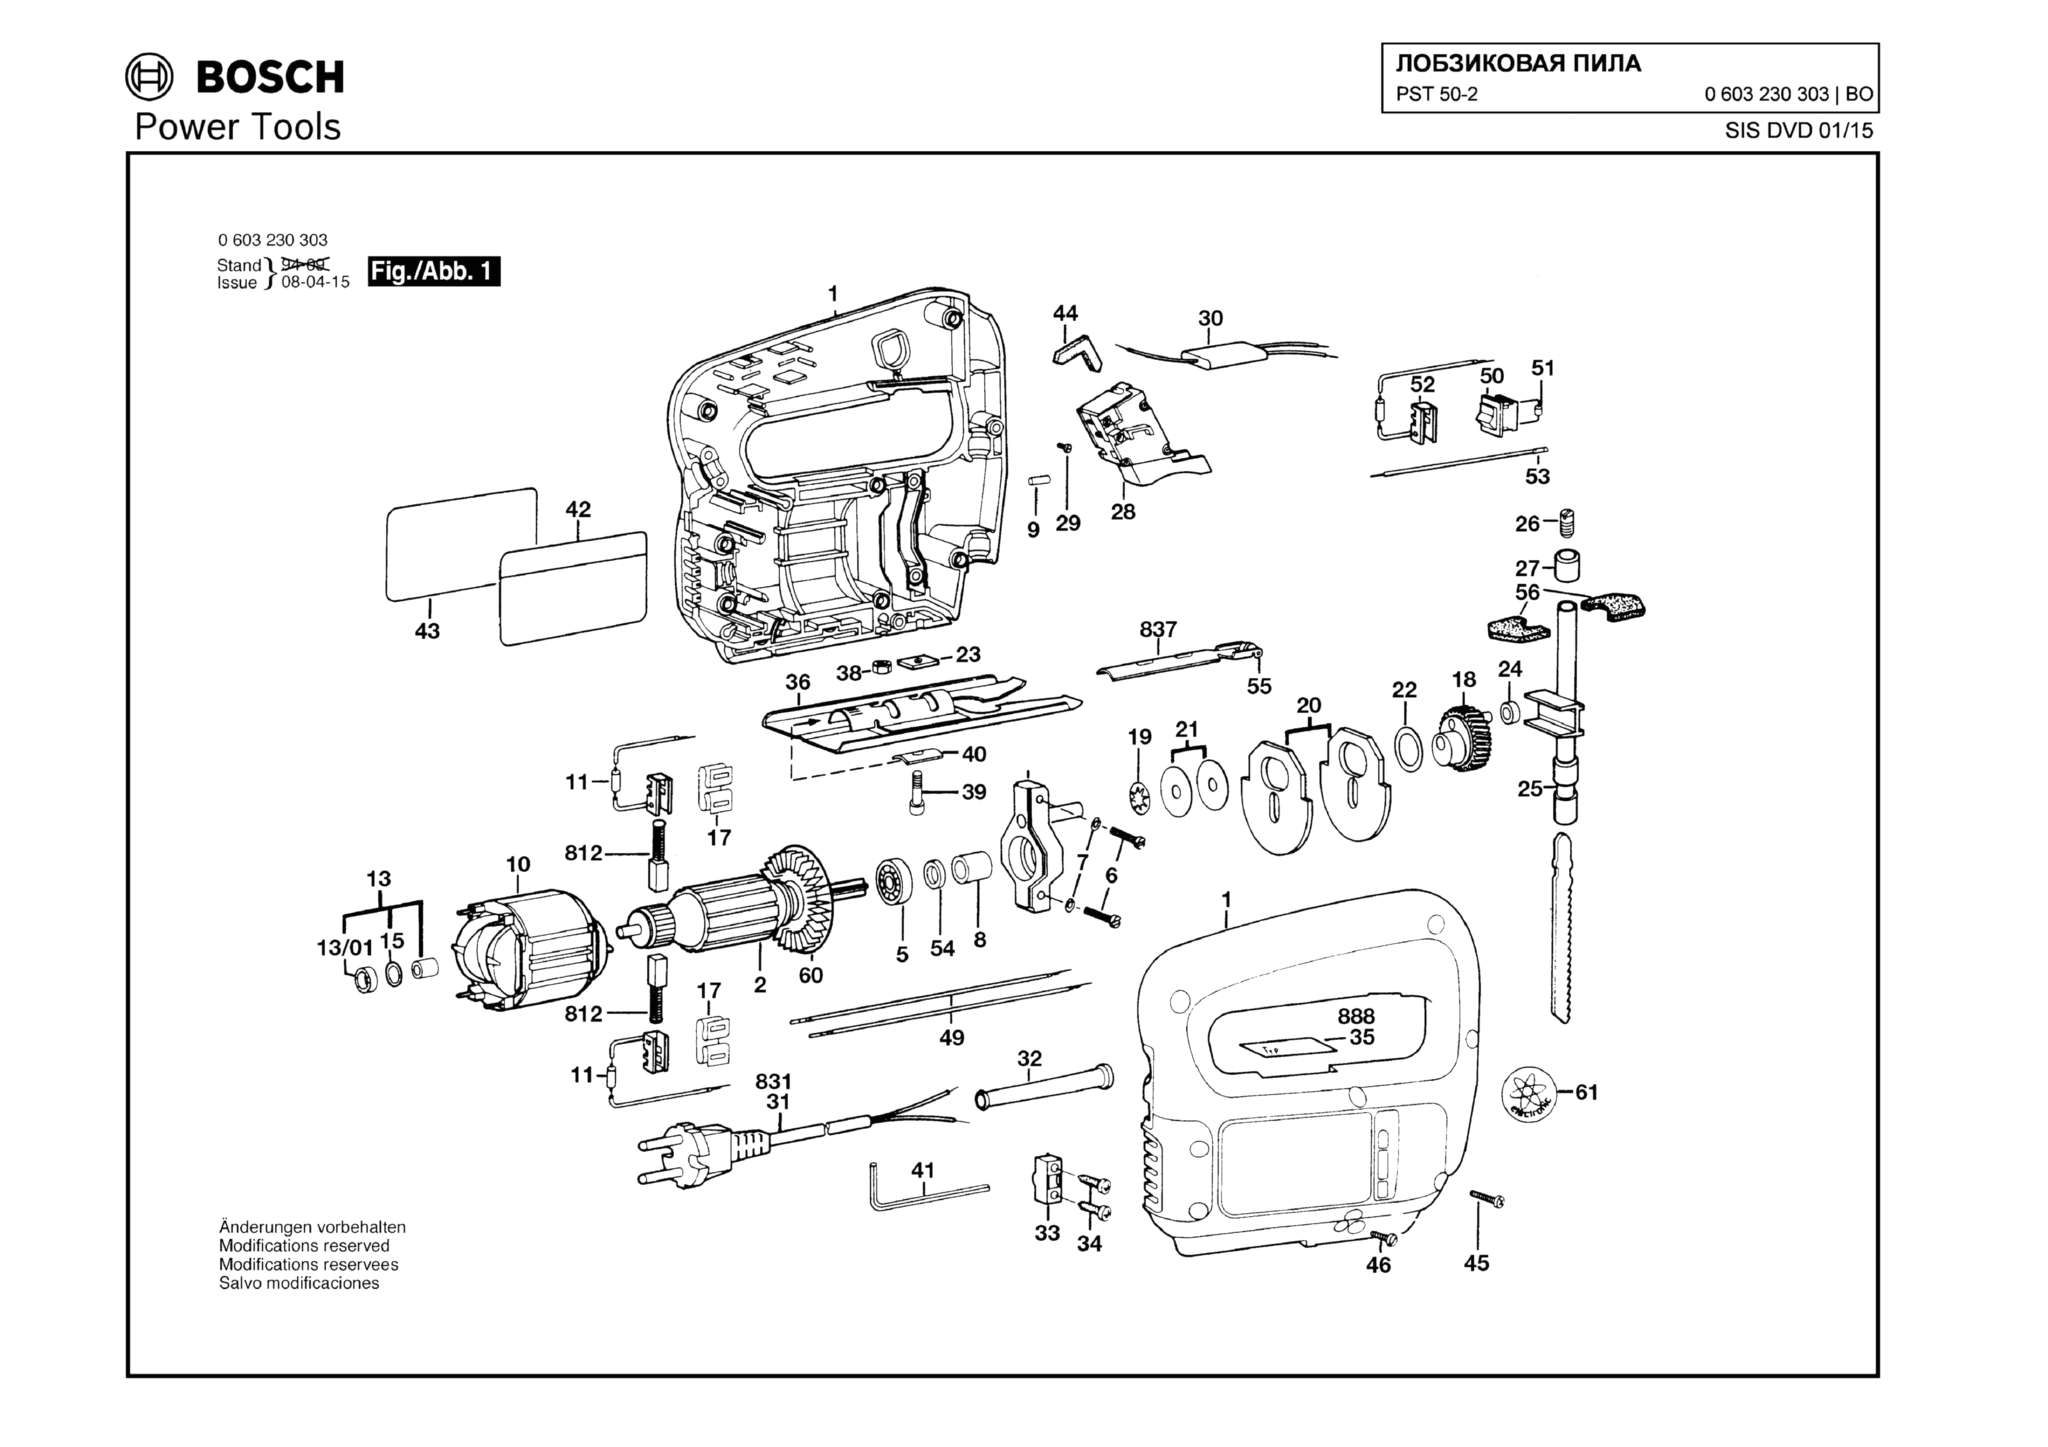 Запчасти, схема и деталировка Bosch PST 50-2 (ТИП 0603230303)